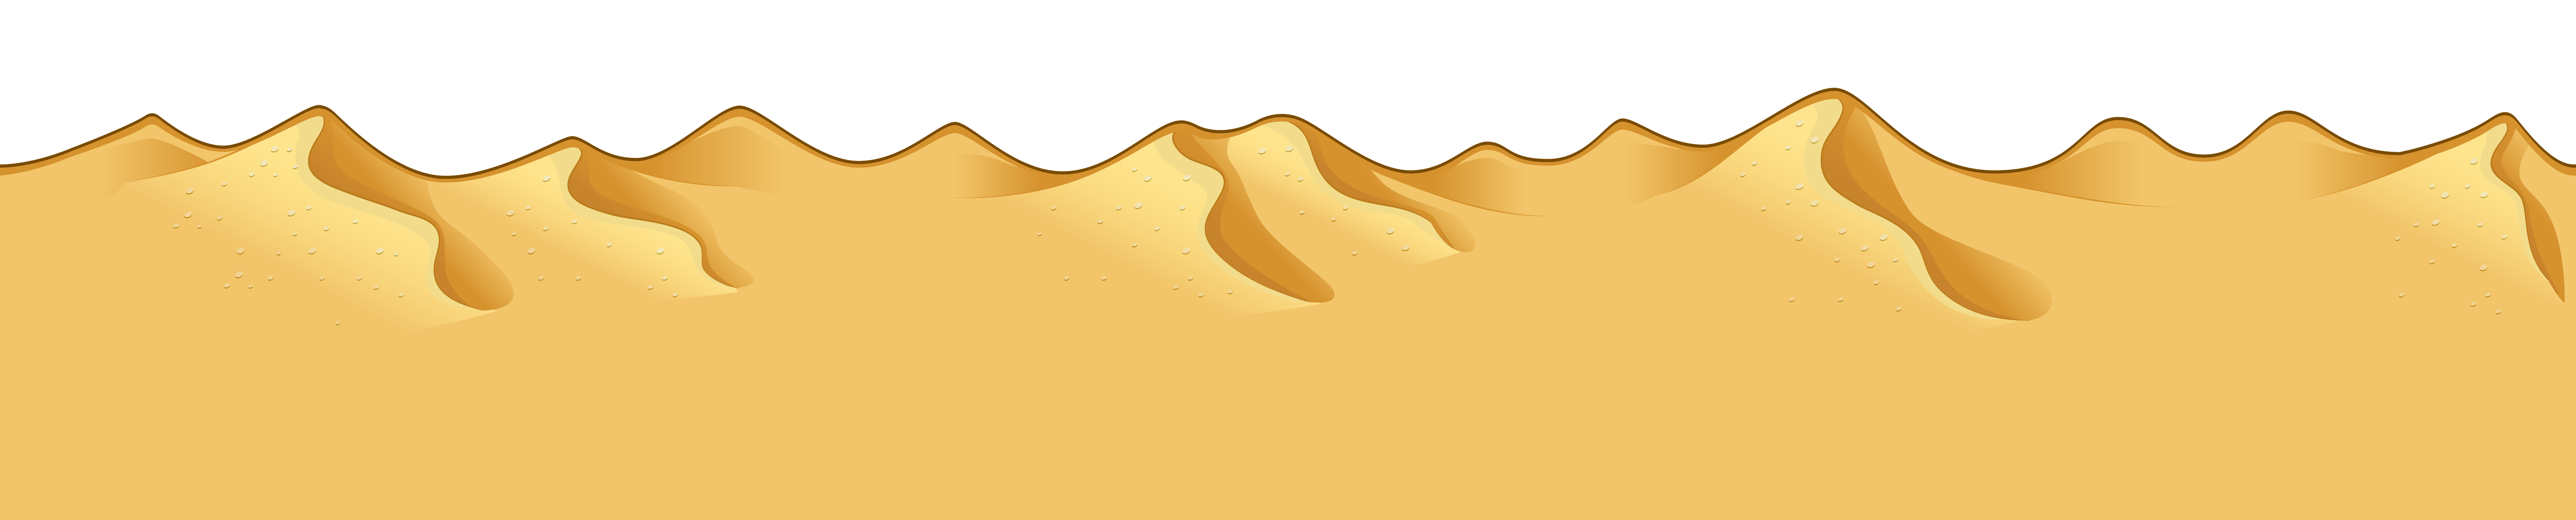 Fundo isolado transparente de areia do deserto